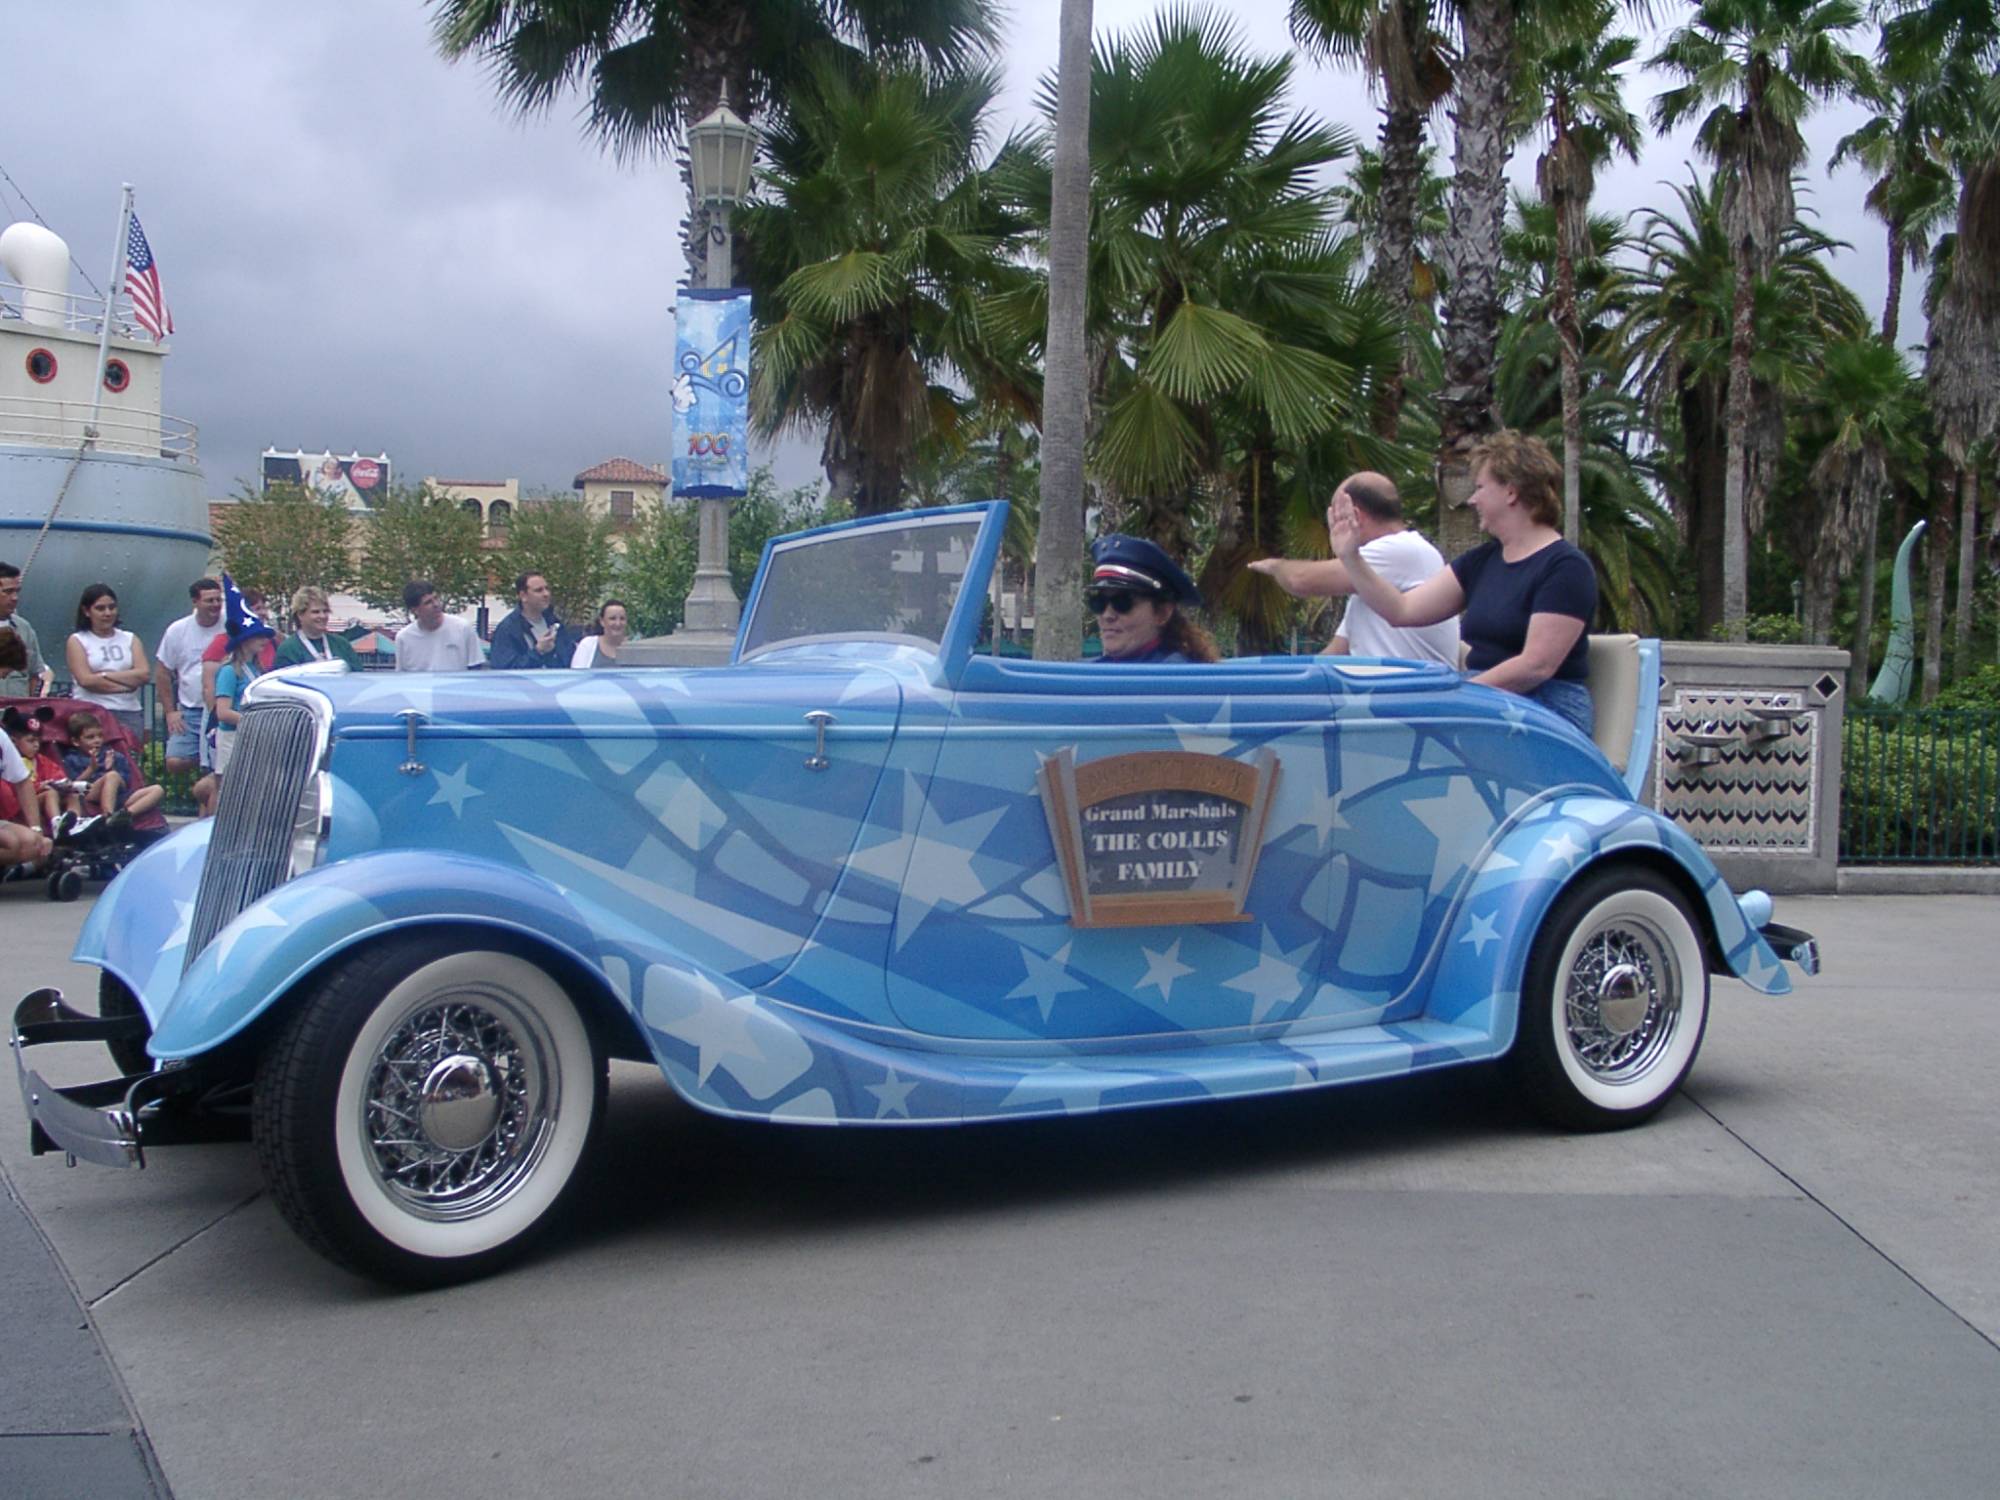 Look Back at Disney Stars and Motor Cars Parade